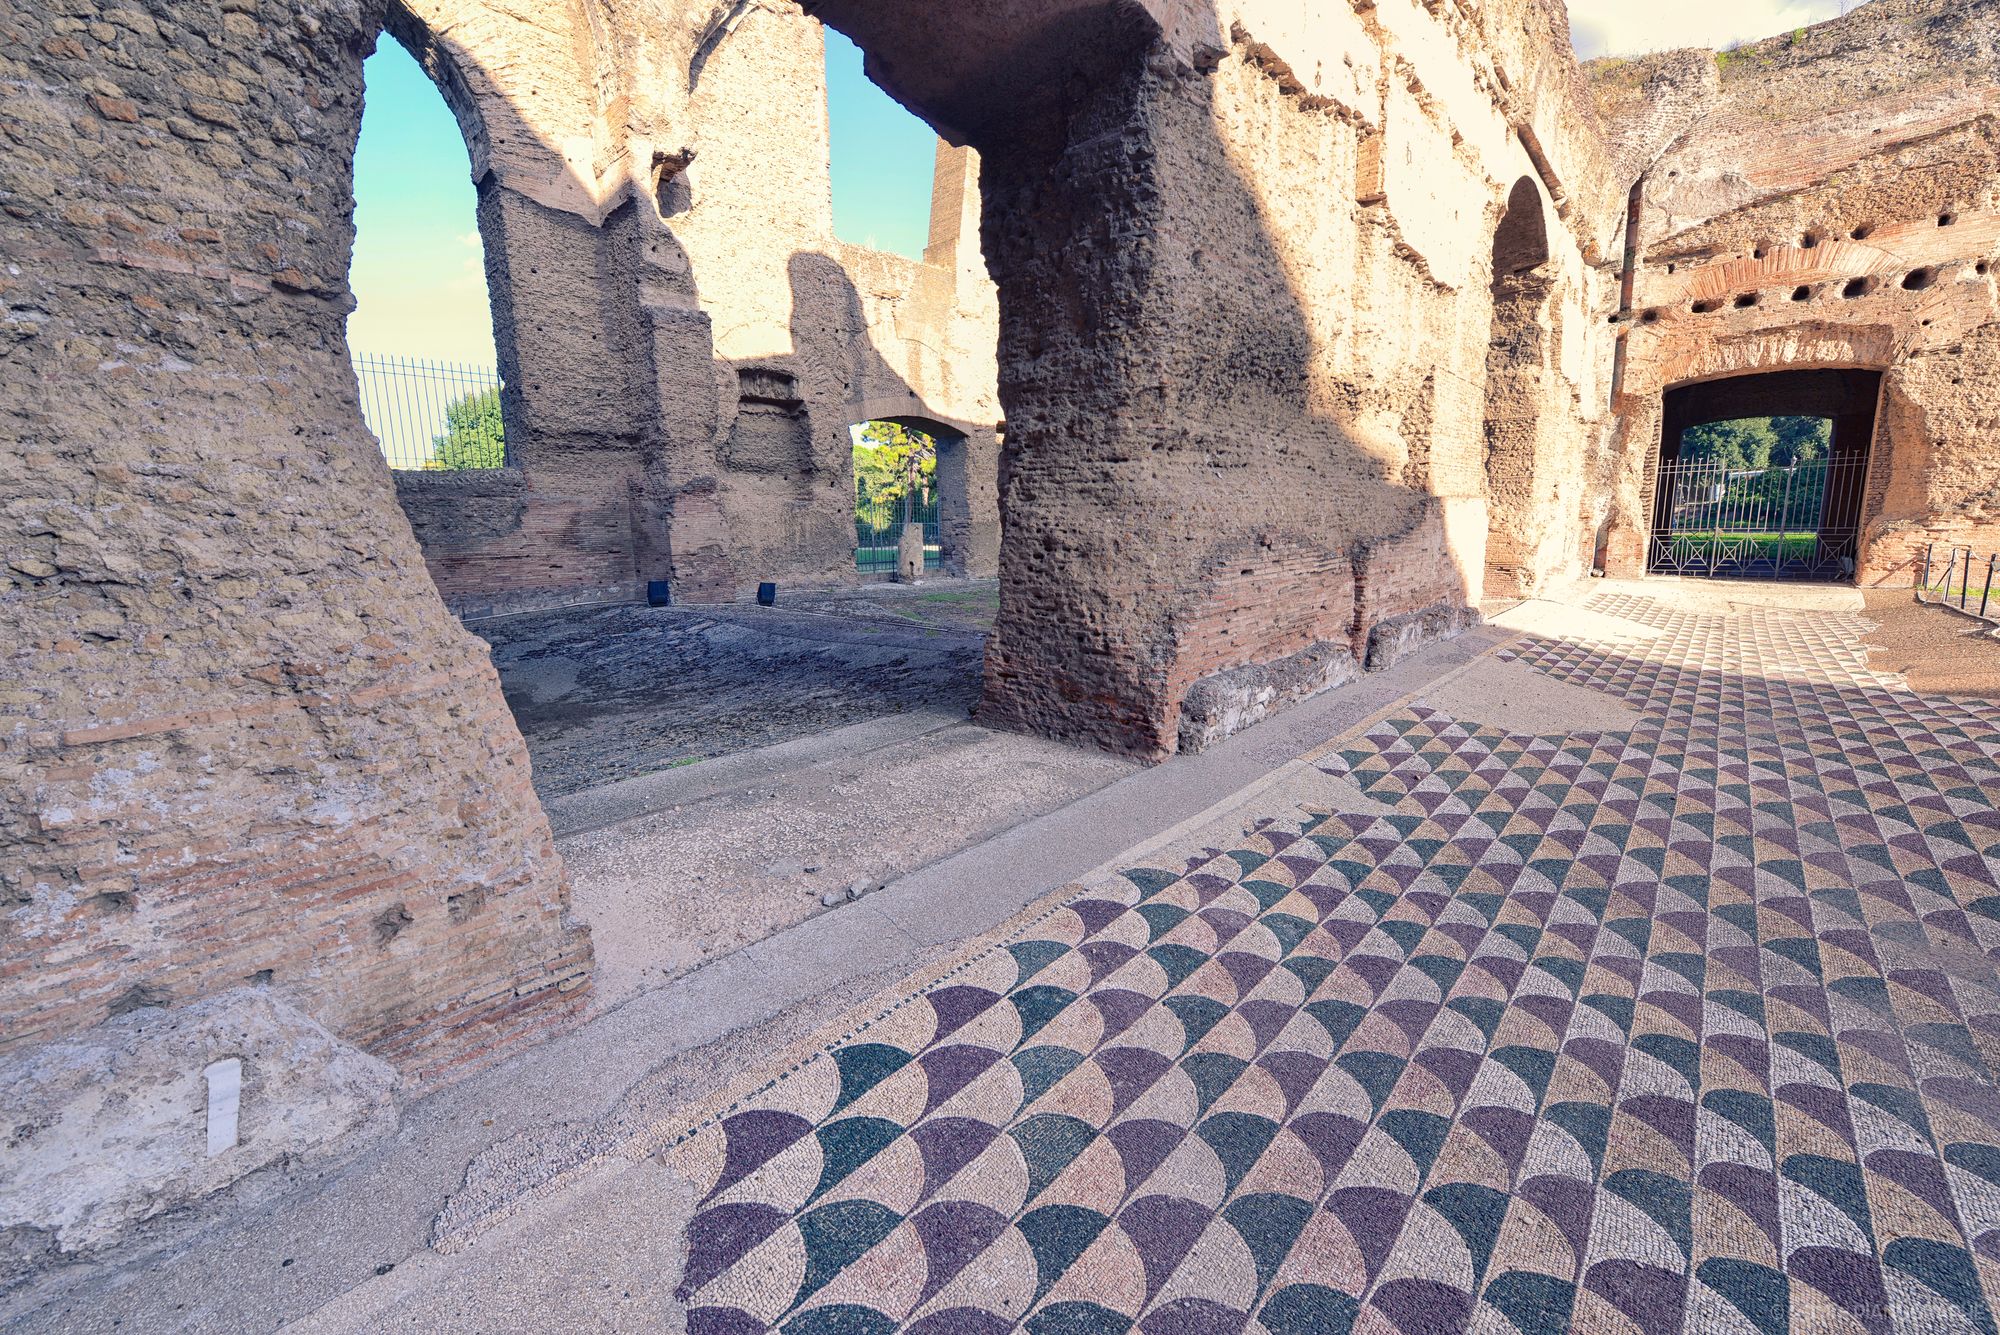 Vue sur les ruines des Thermes de Caracalla, mosaïque tricolore au sol